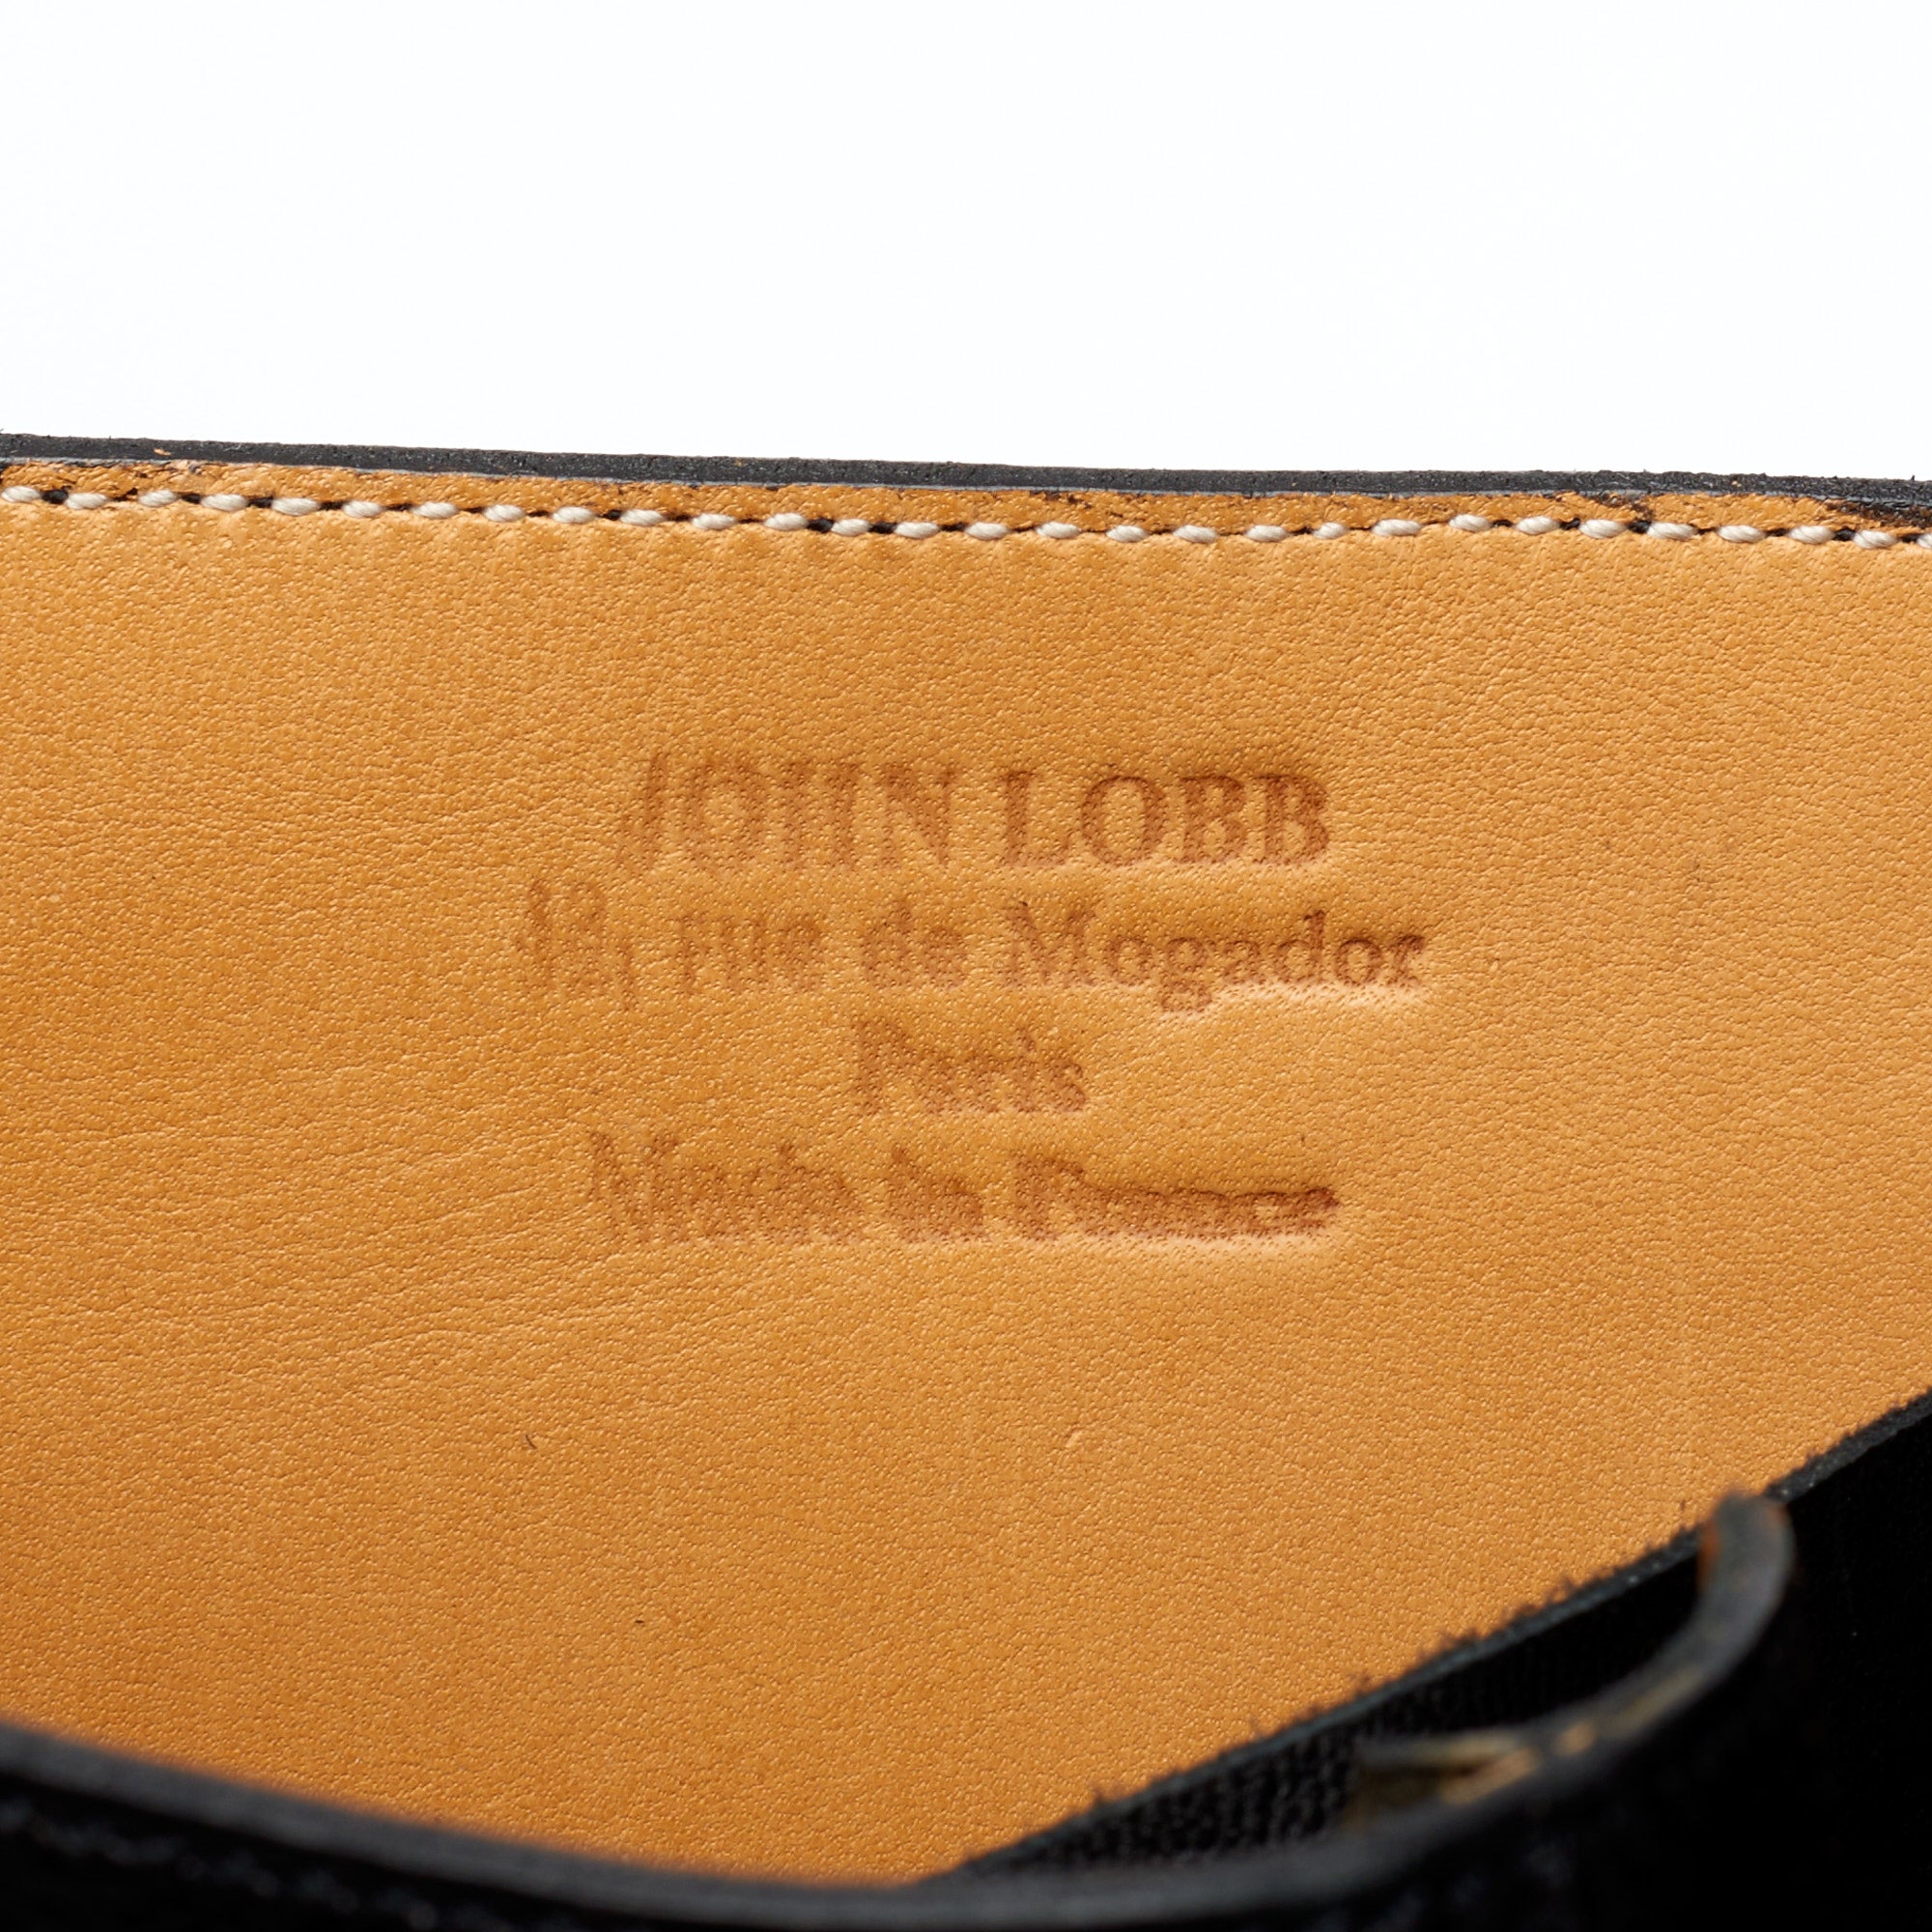 JOHN LOBB Paris Bespoke Black Triple Buckle Verderveski  Boots NEW US 8.5 JOHN LOBB